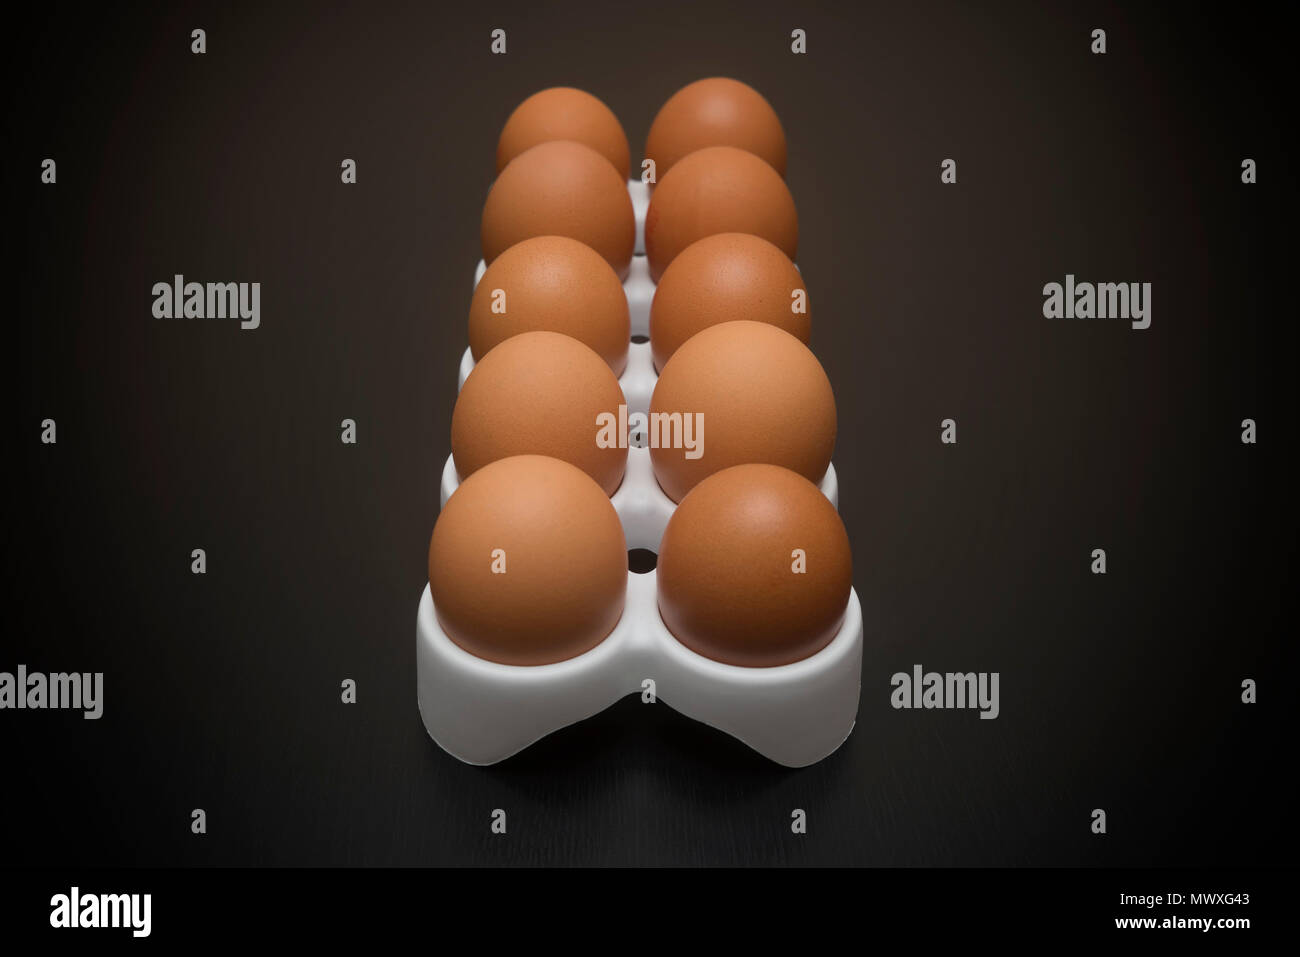 Grupo de huevos de pollo marrón Foto de stock